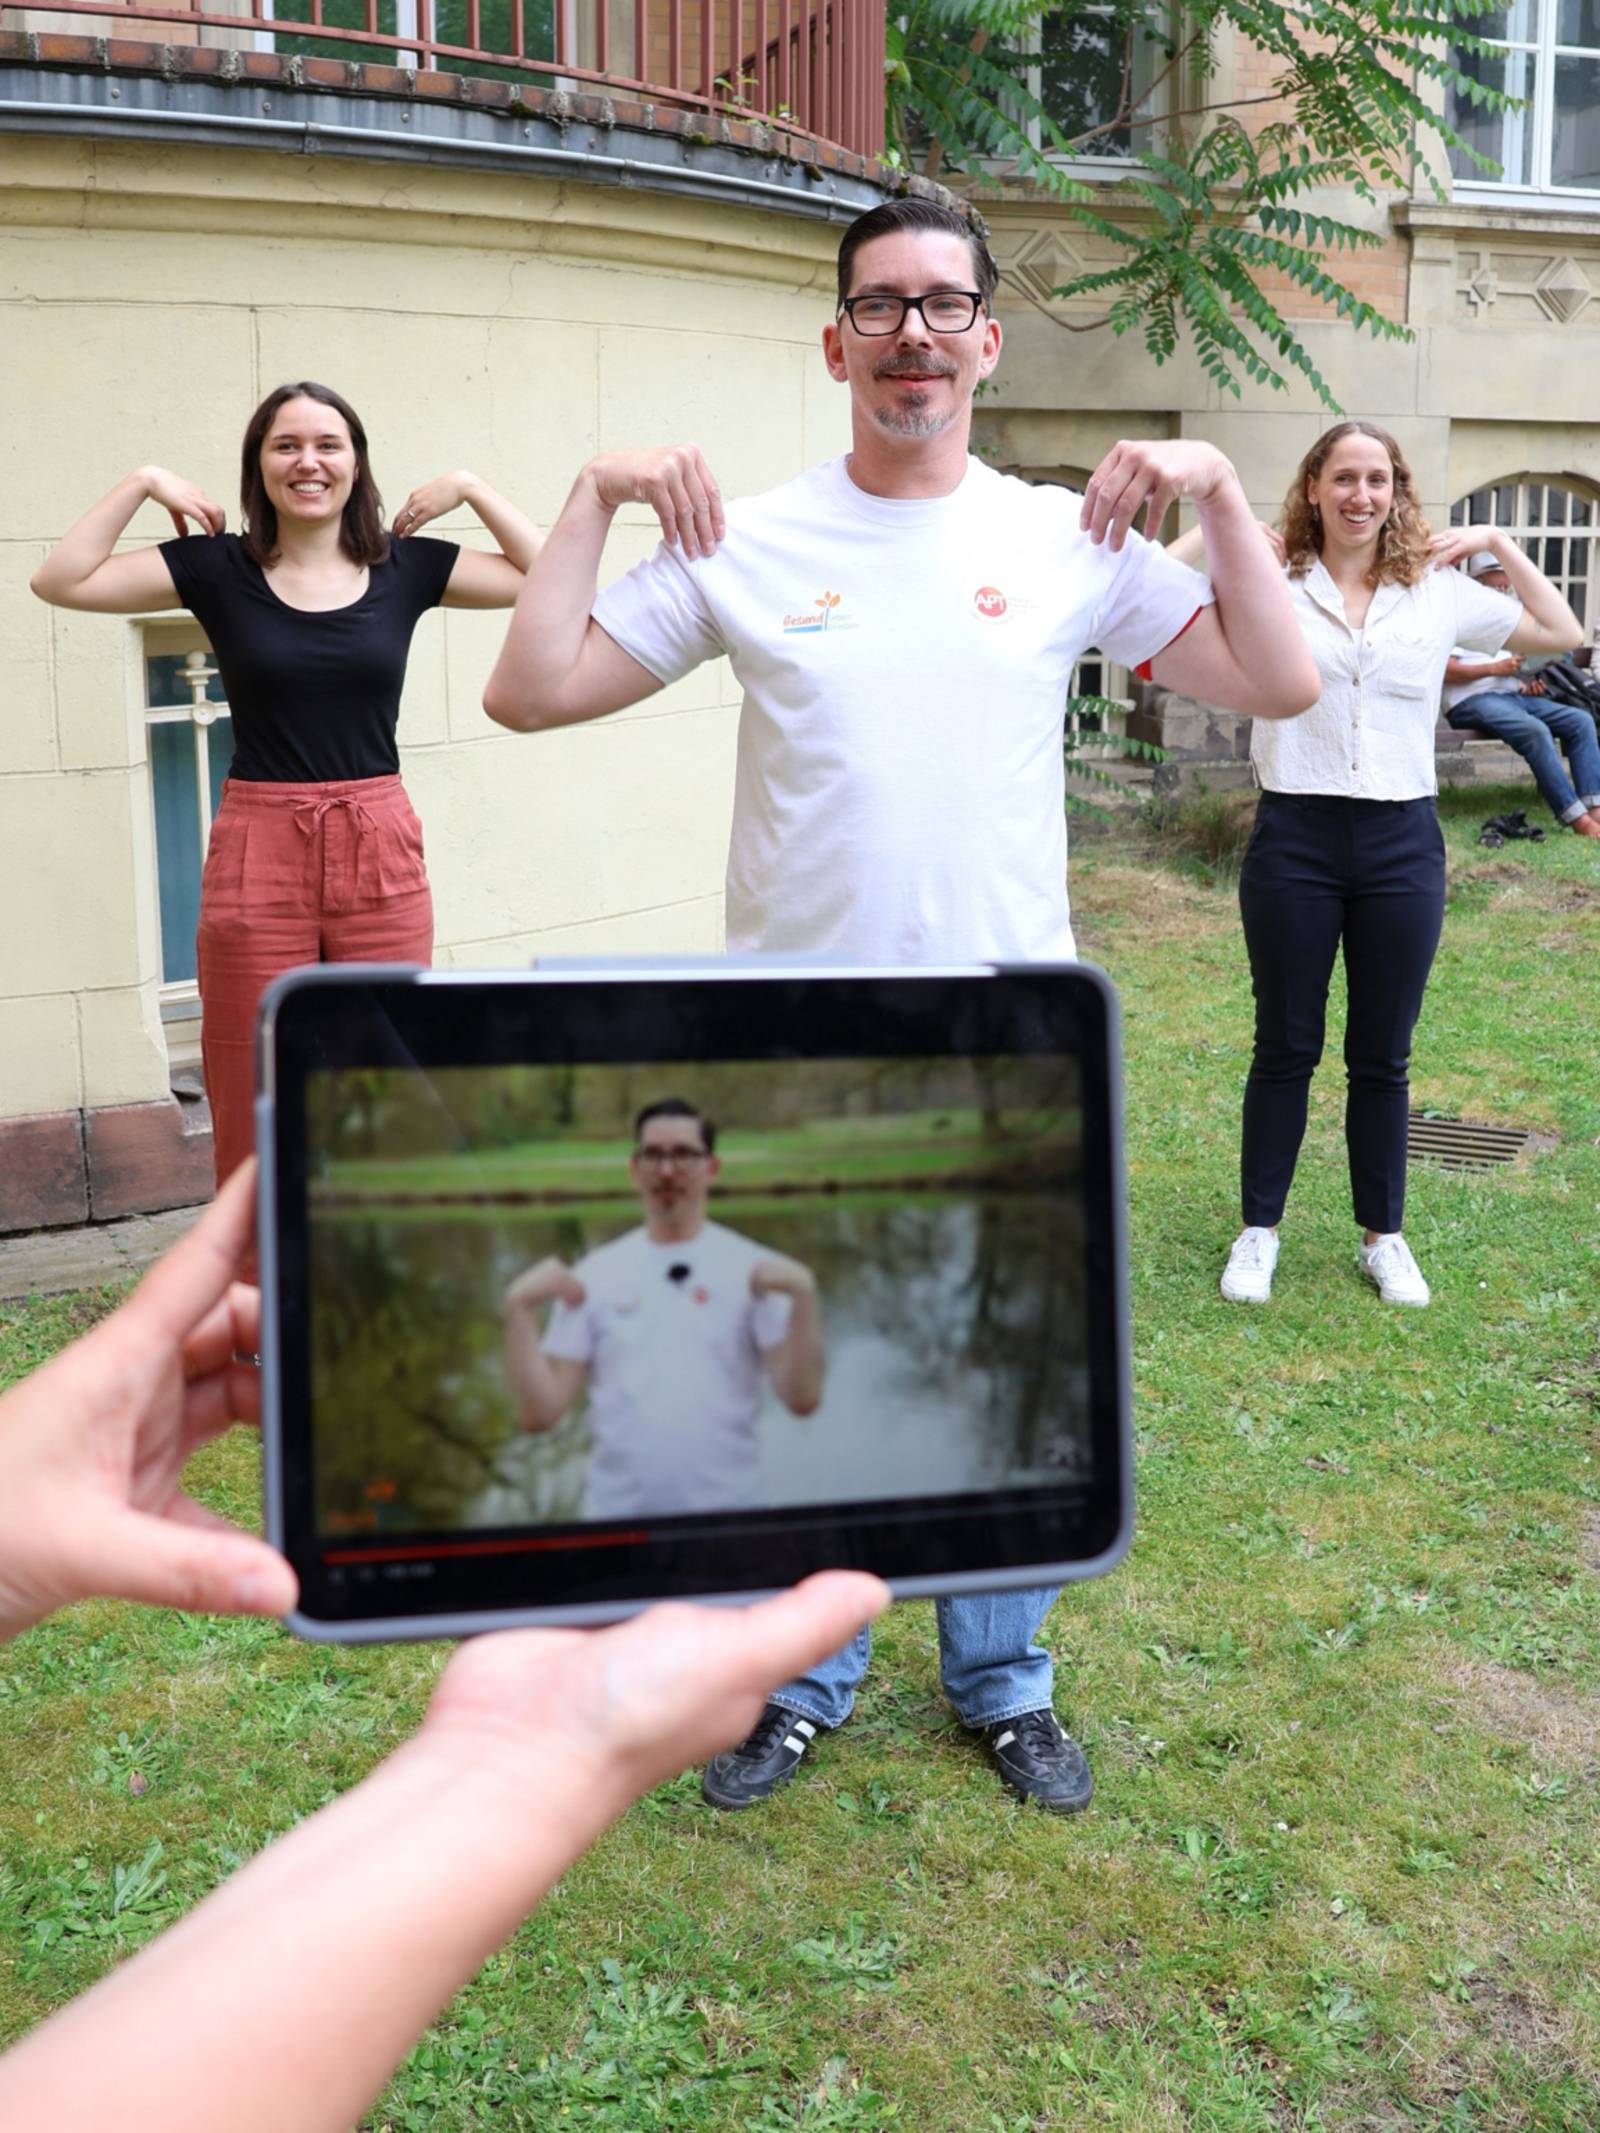 Drei Personen bei sportlicher Betätigung. Die Anleitung dazu kommt aus einer App auf einem Tablet.